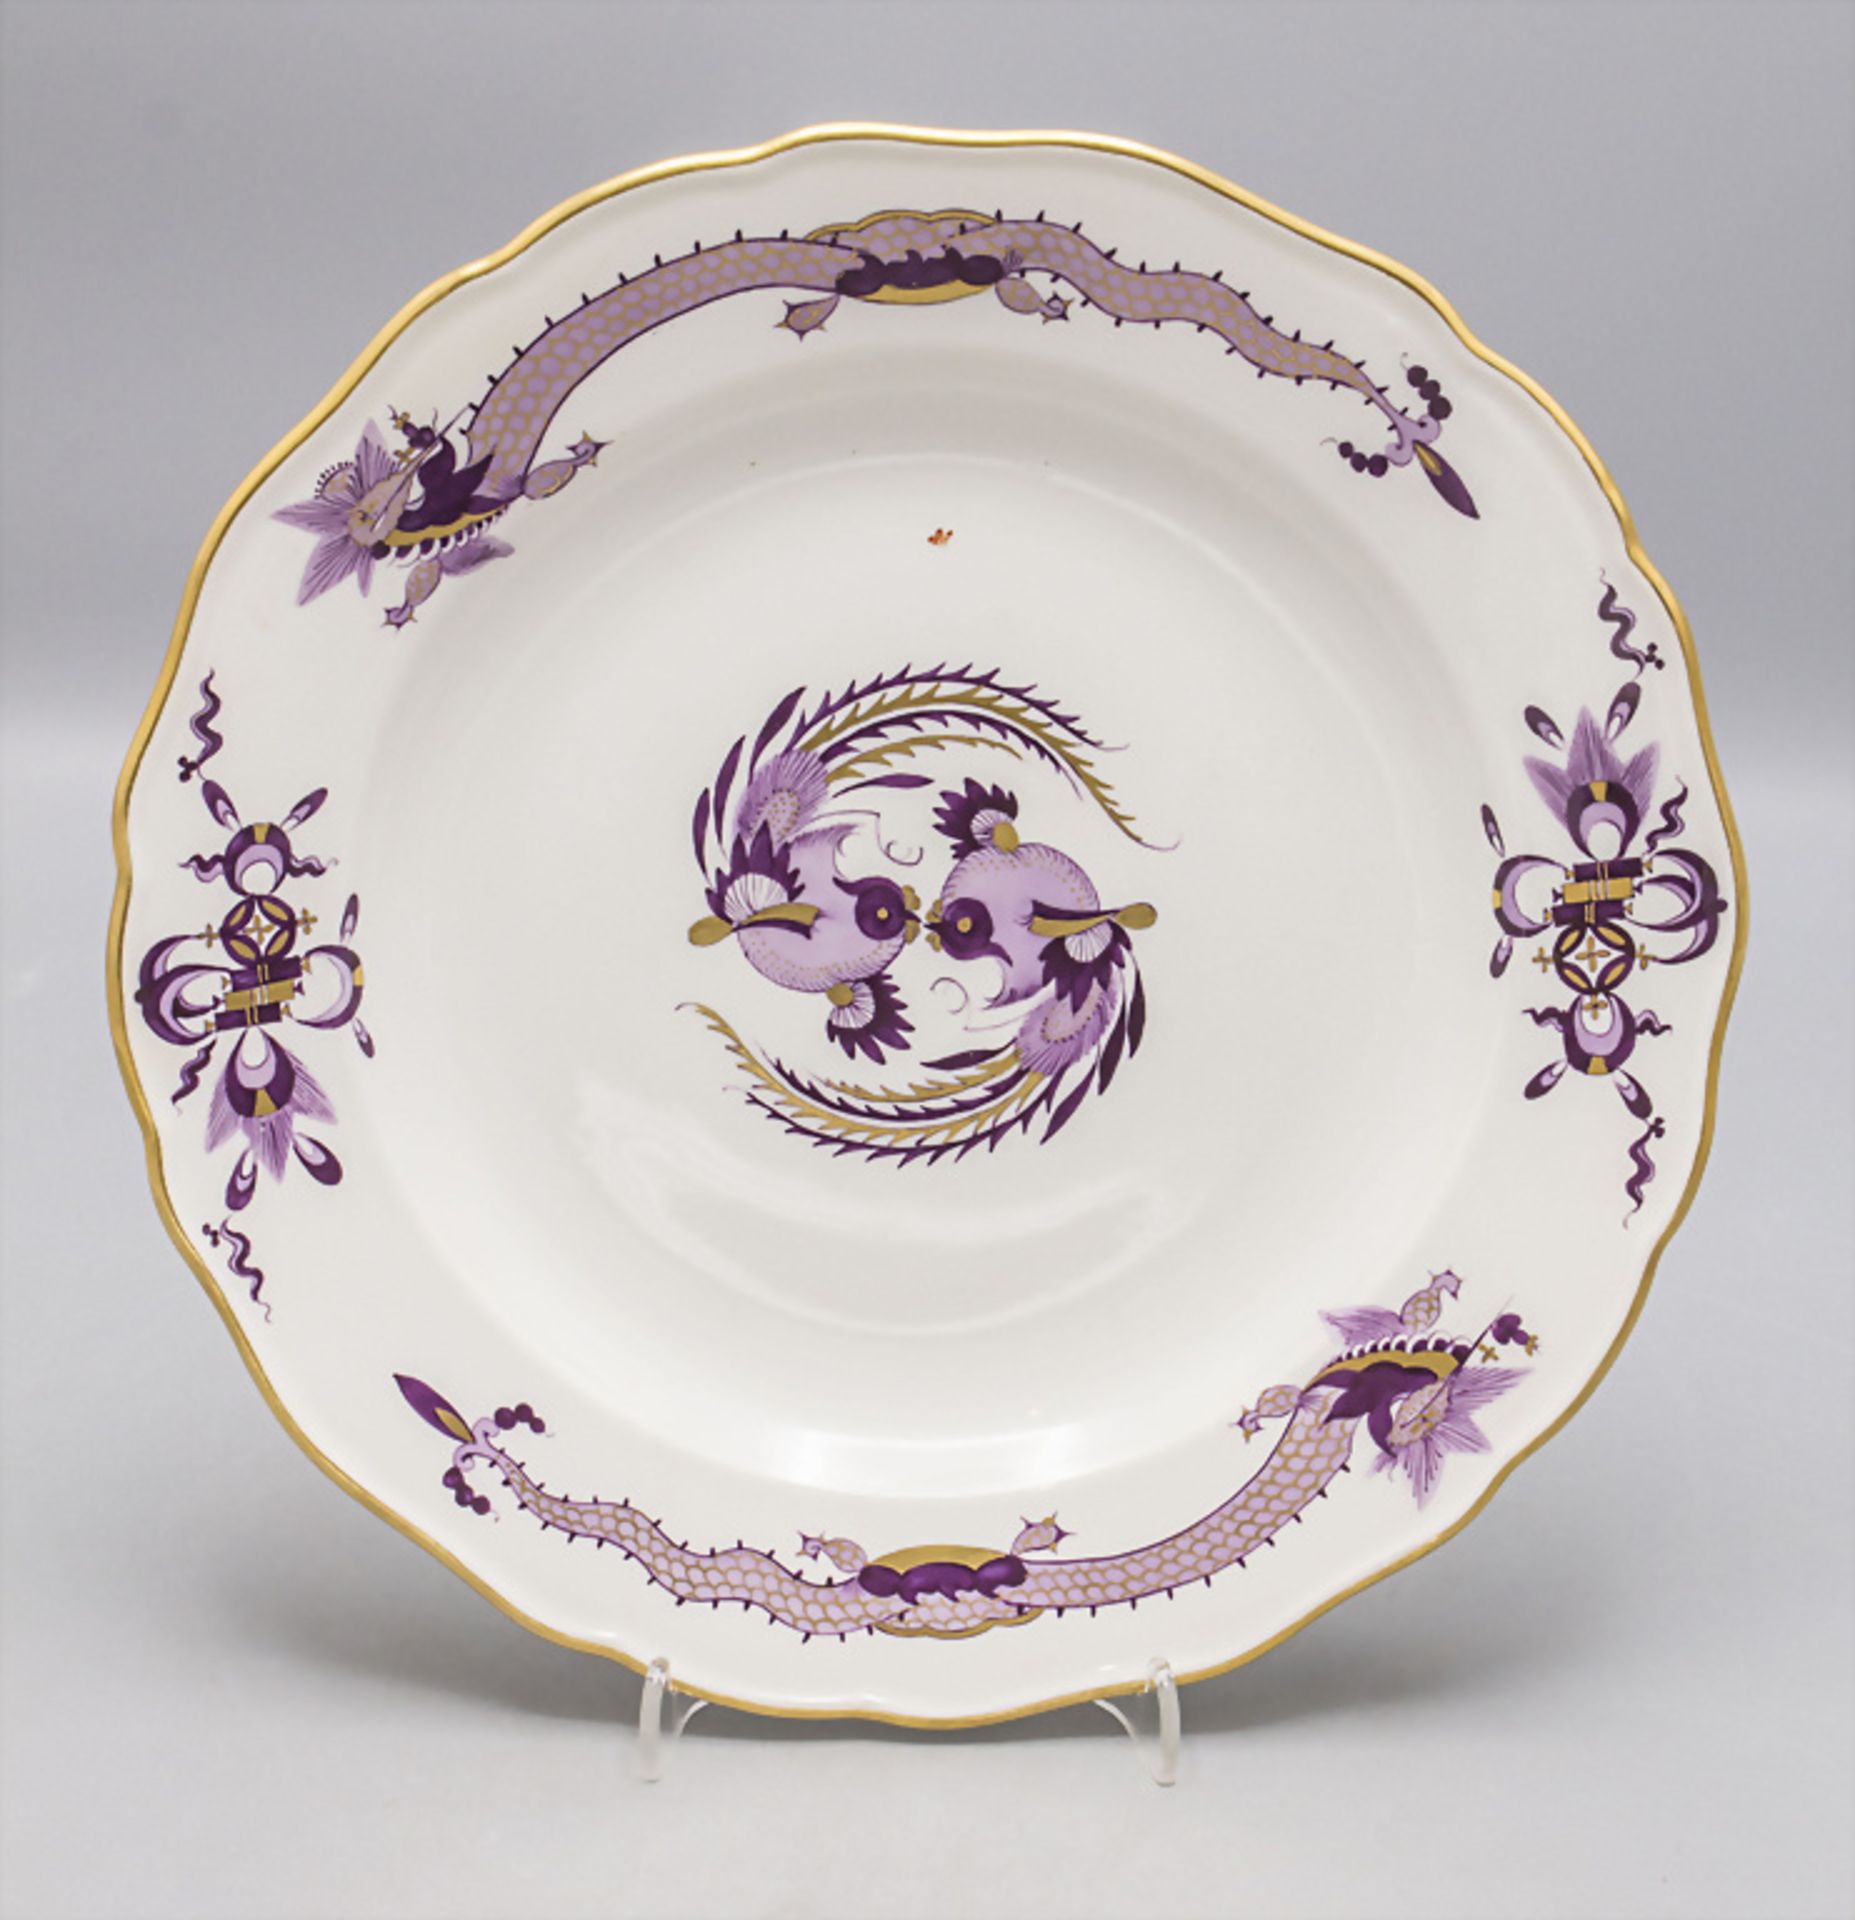 Speiseteller 'Reicher Drache' / A dinner plate with 'Rich Dragon' decoration, Meissen, Ende 19. Jh.